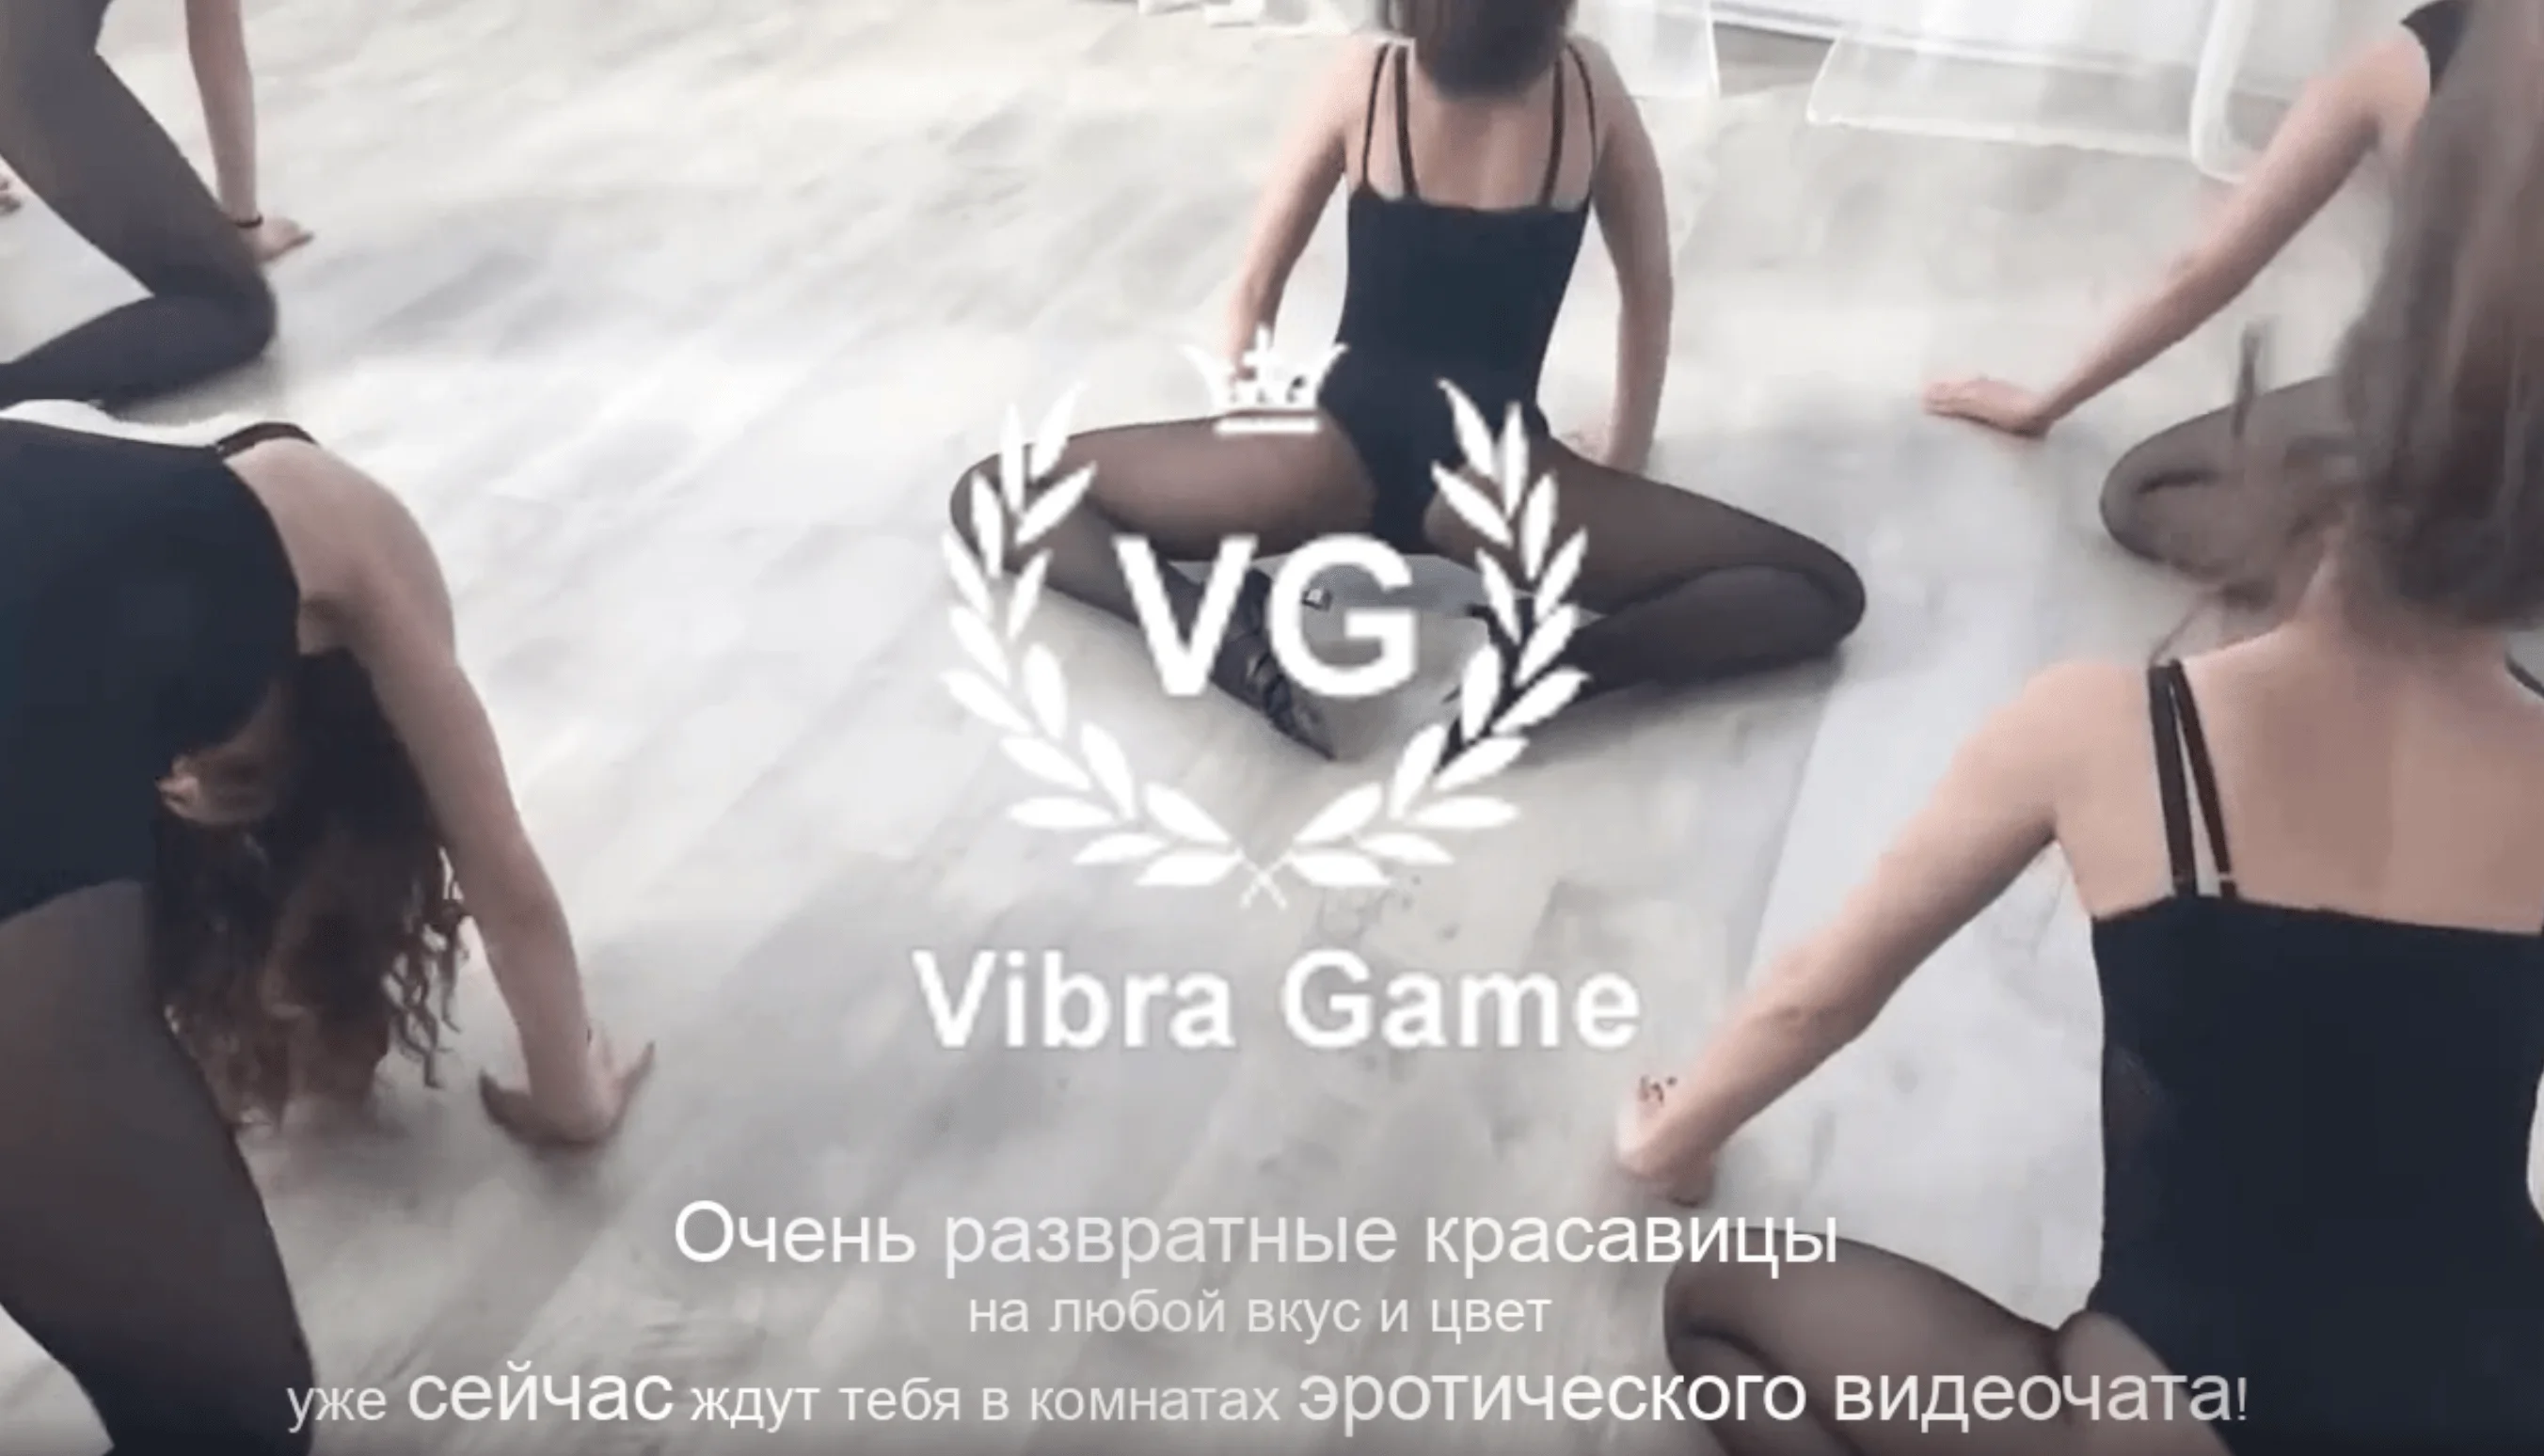 Смотреть Порно Видео Русские Девушки В Чате